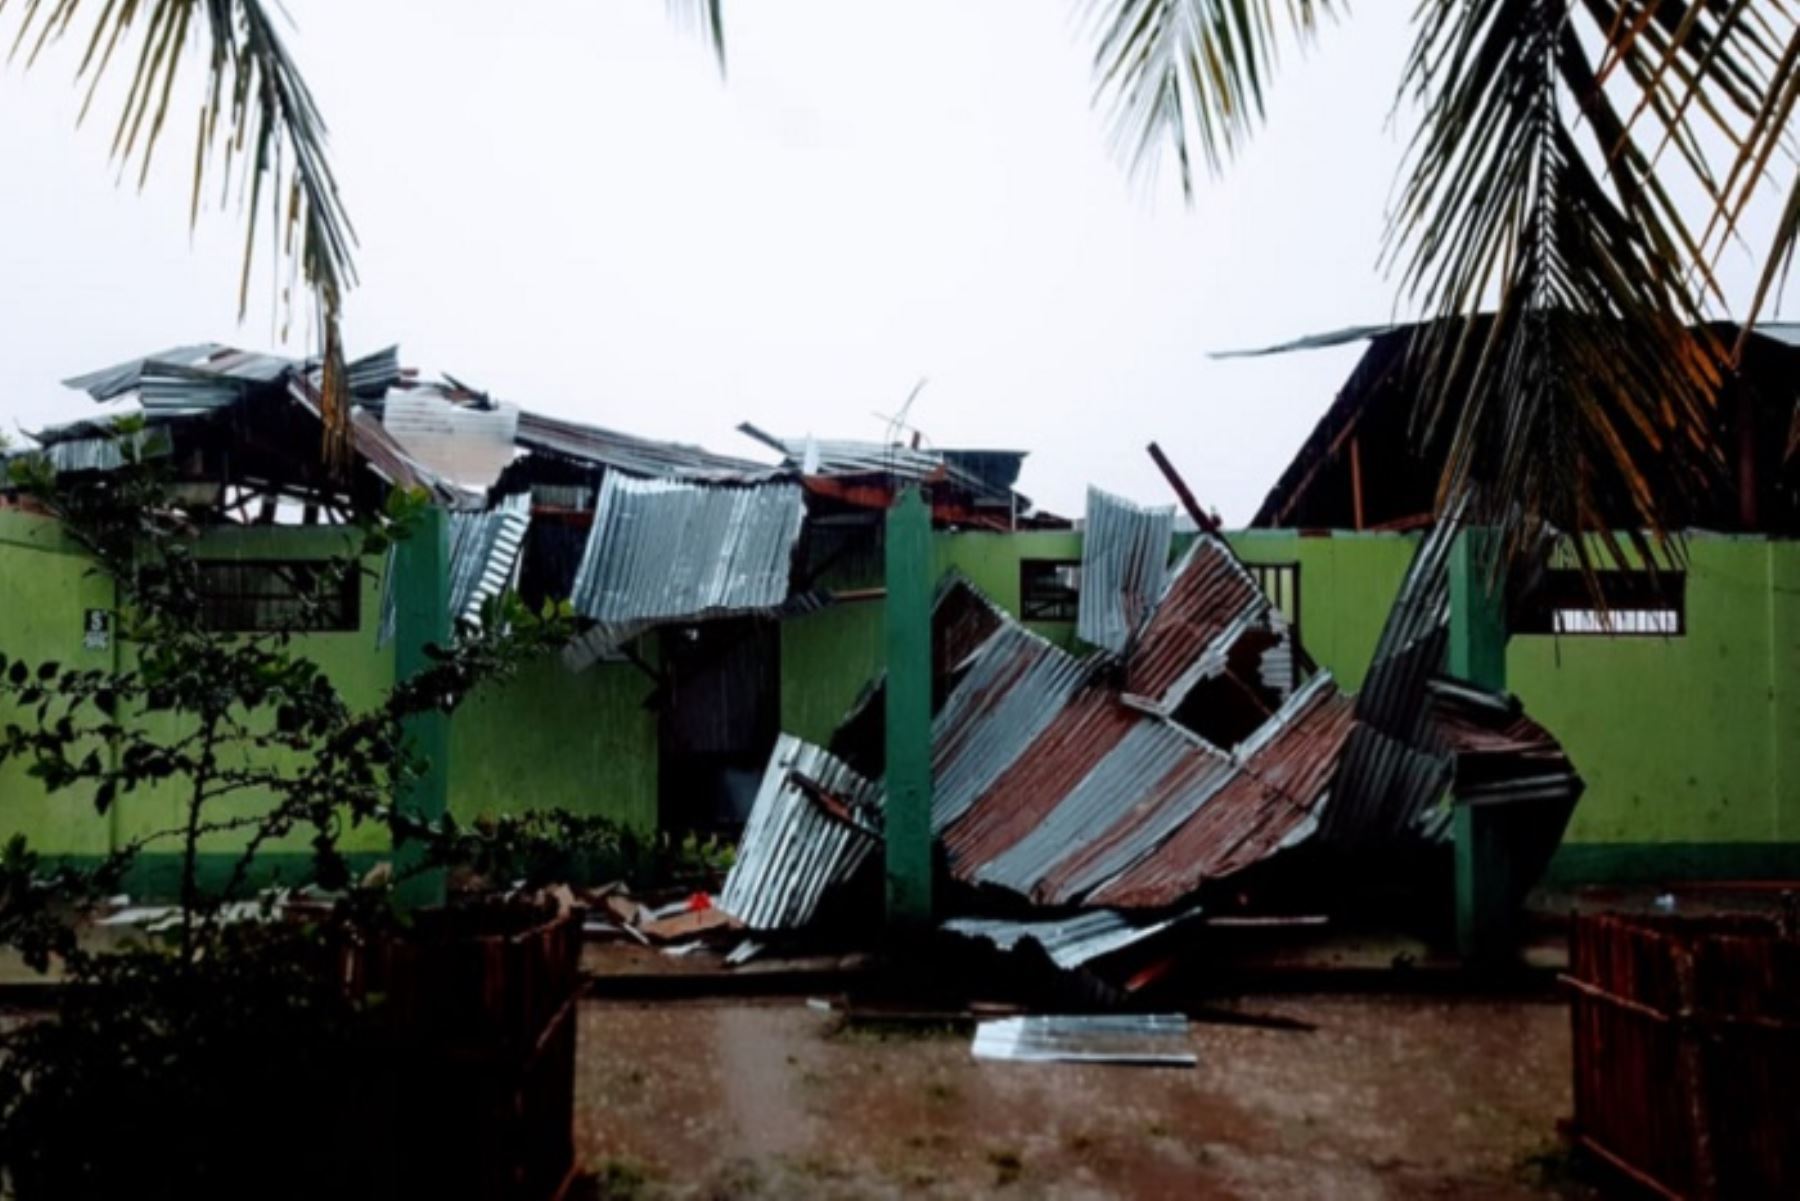 Los vientos fuertes, acompañados de lluvias y descargas eléctricas, que se registraron en varios distritos de la región San Martín, ha dejado hasta el momento 238 personas damnificadas, otras 20 afectadas y 6 heridas, informó el Instituto Nacional de Defensa Civil (Indeci).